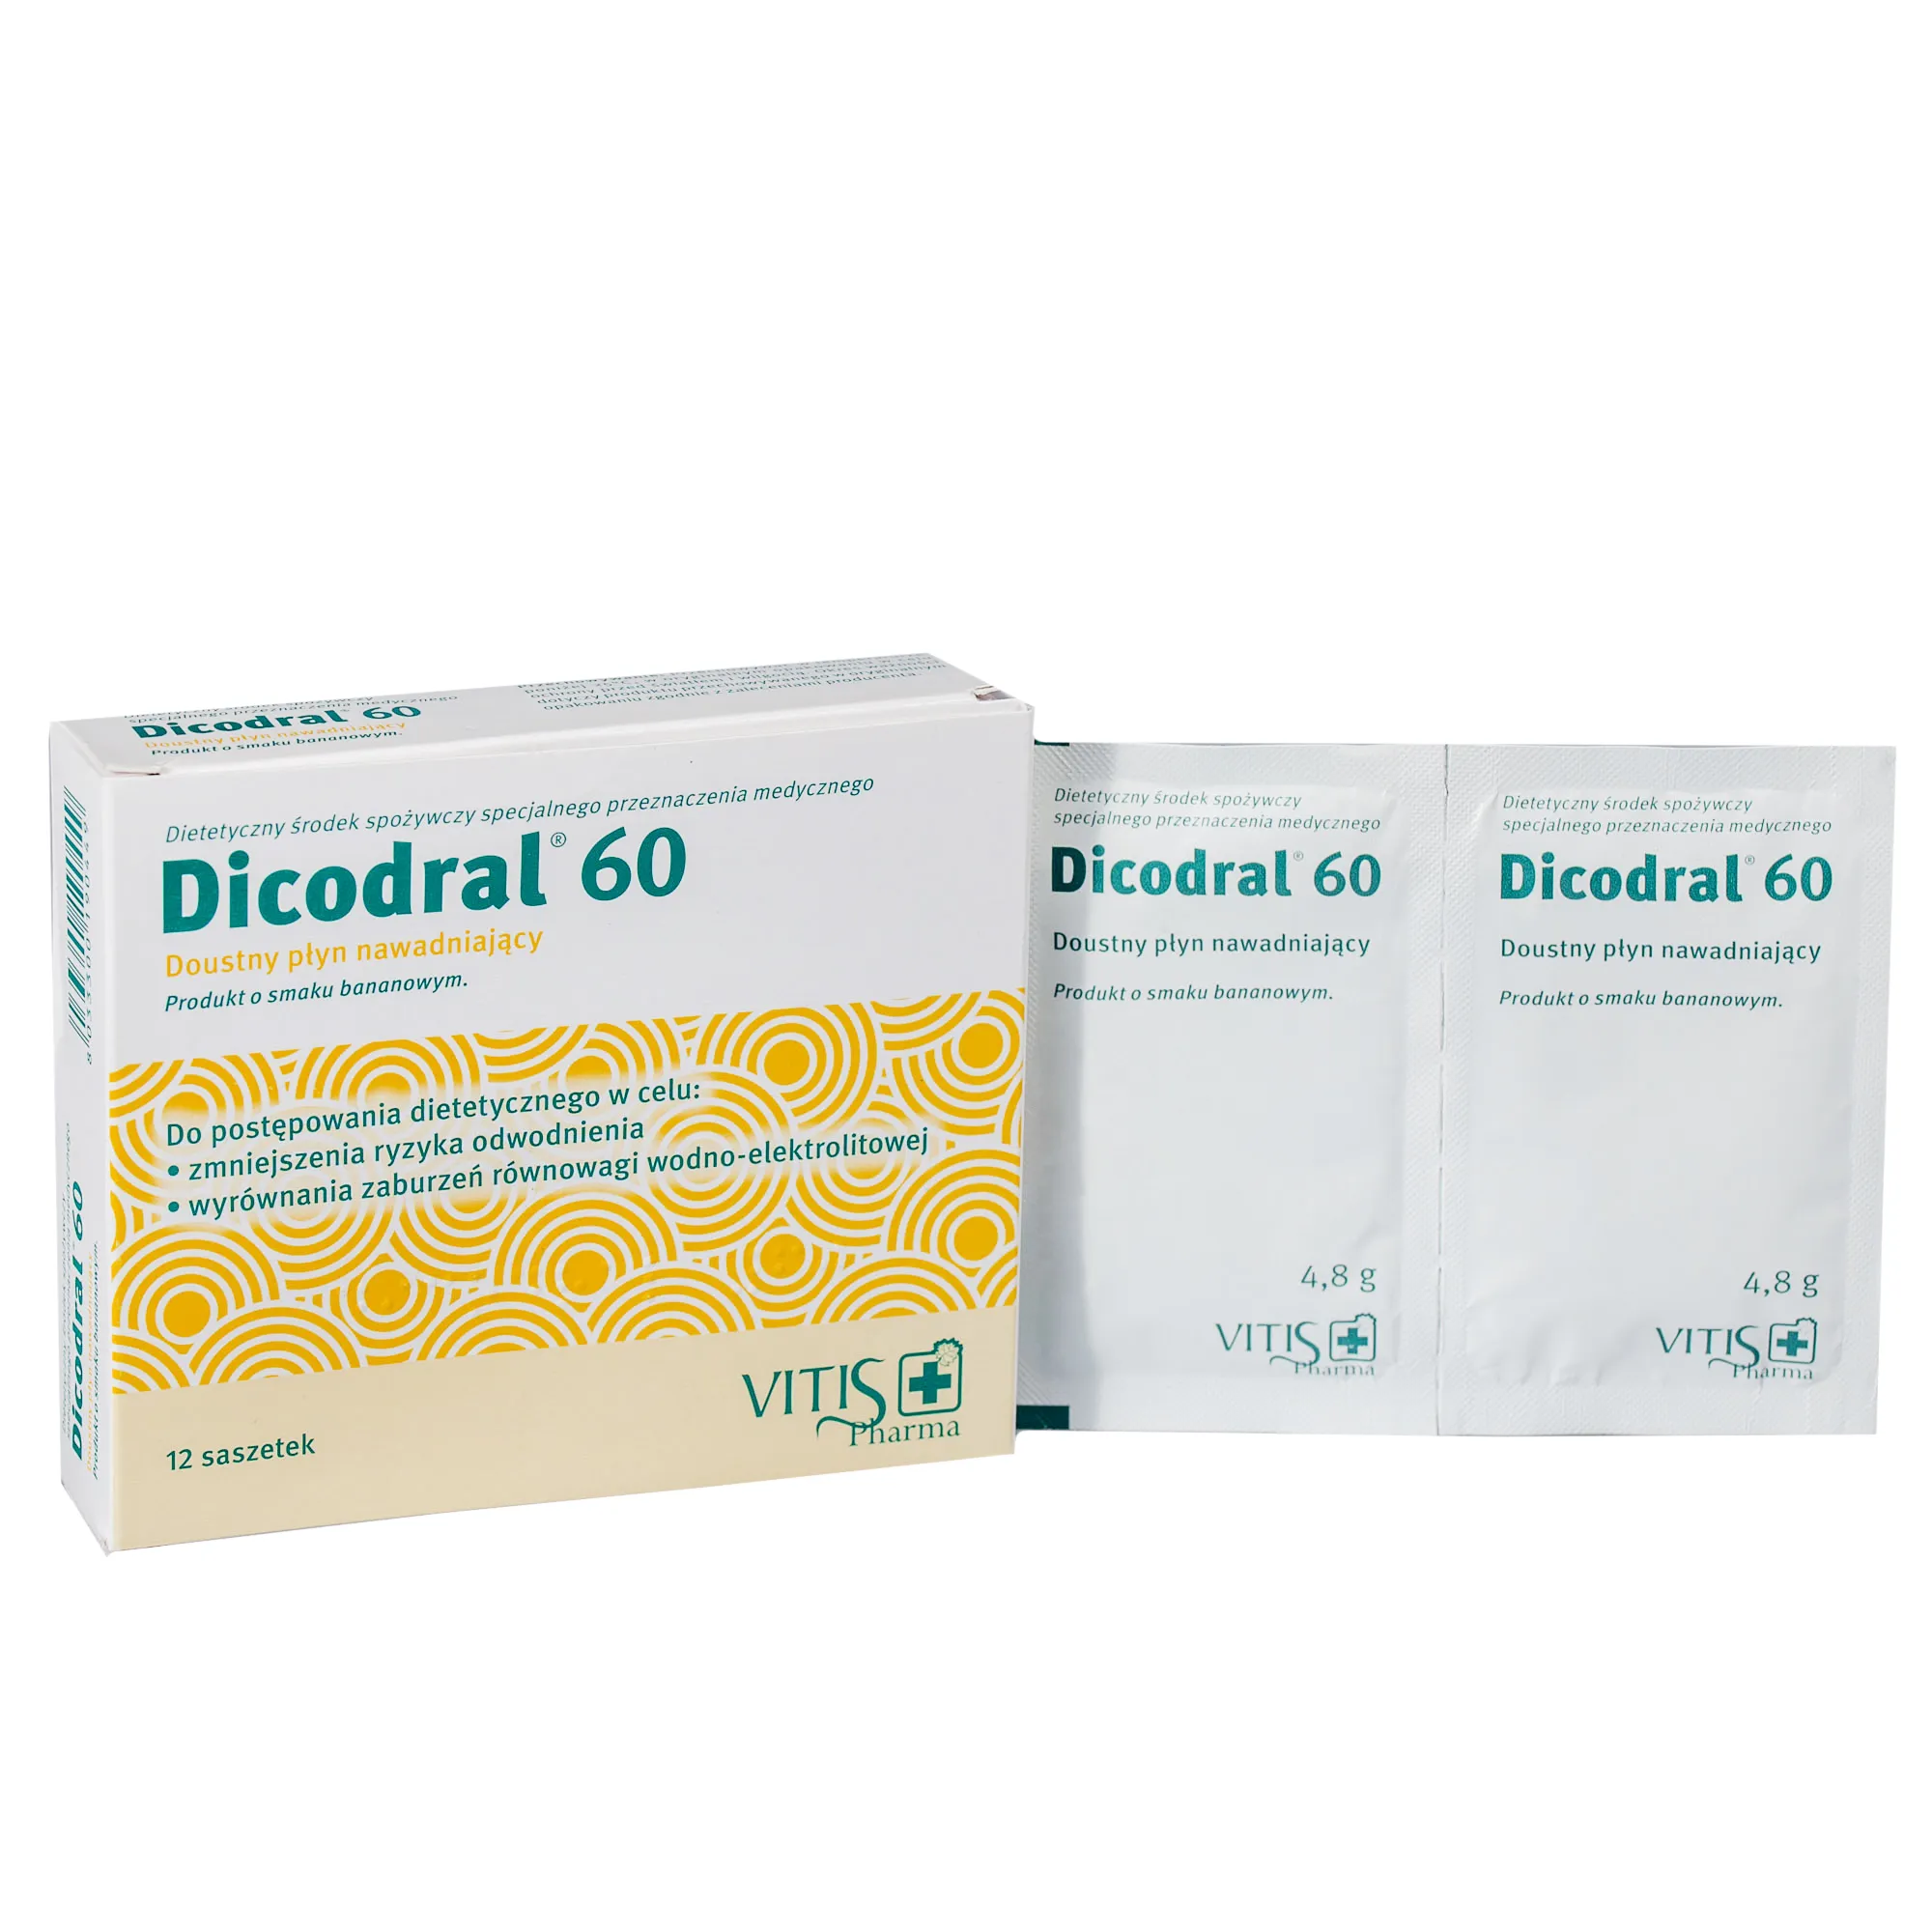 Dicodral 60, suplement diety, 12 saszetek